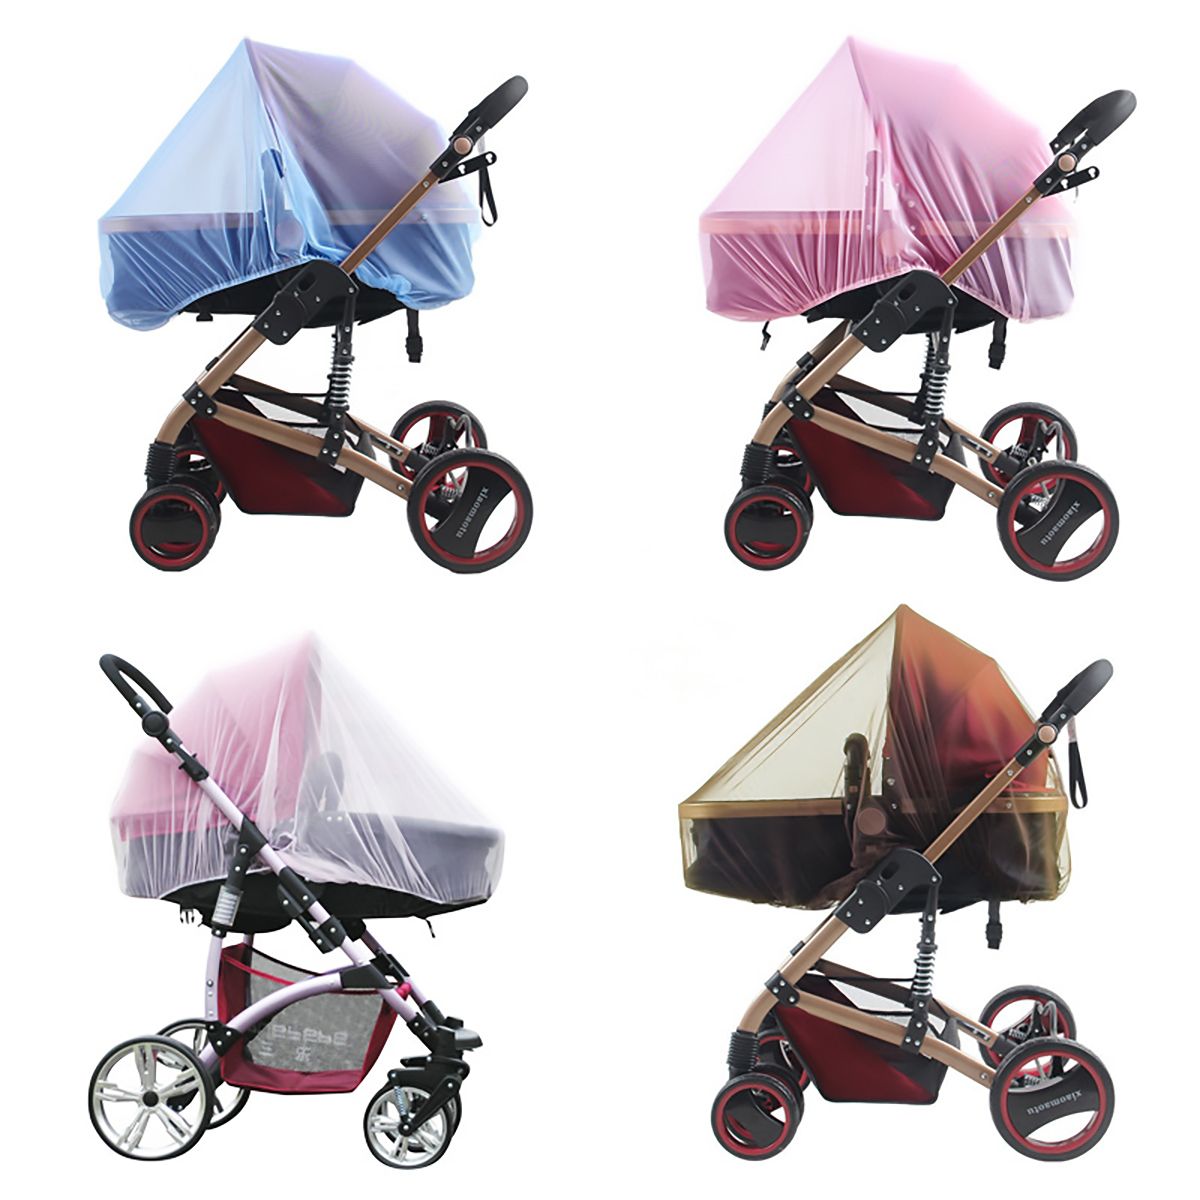 嬰兒車蚊帳耐用便攜式折疊蚊帳嬰兒車配件